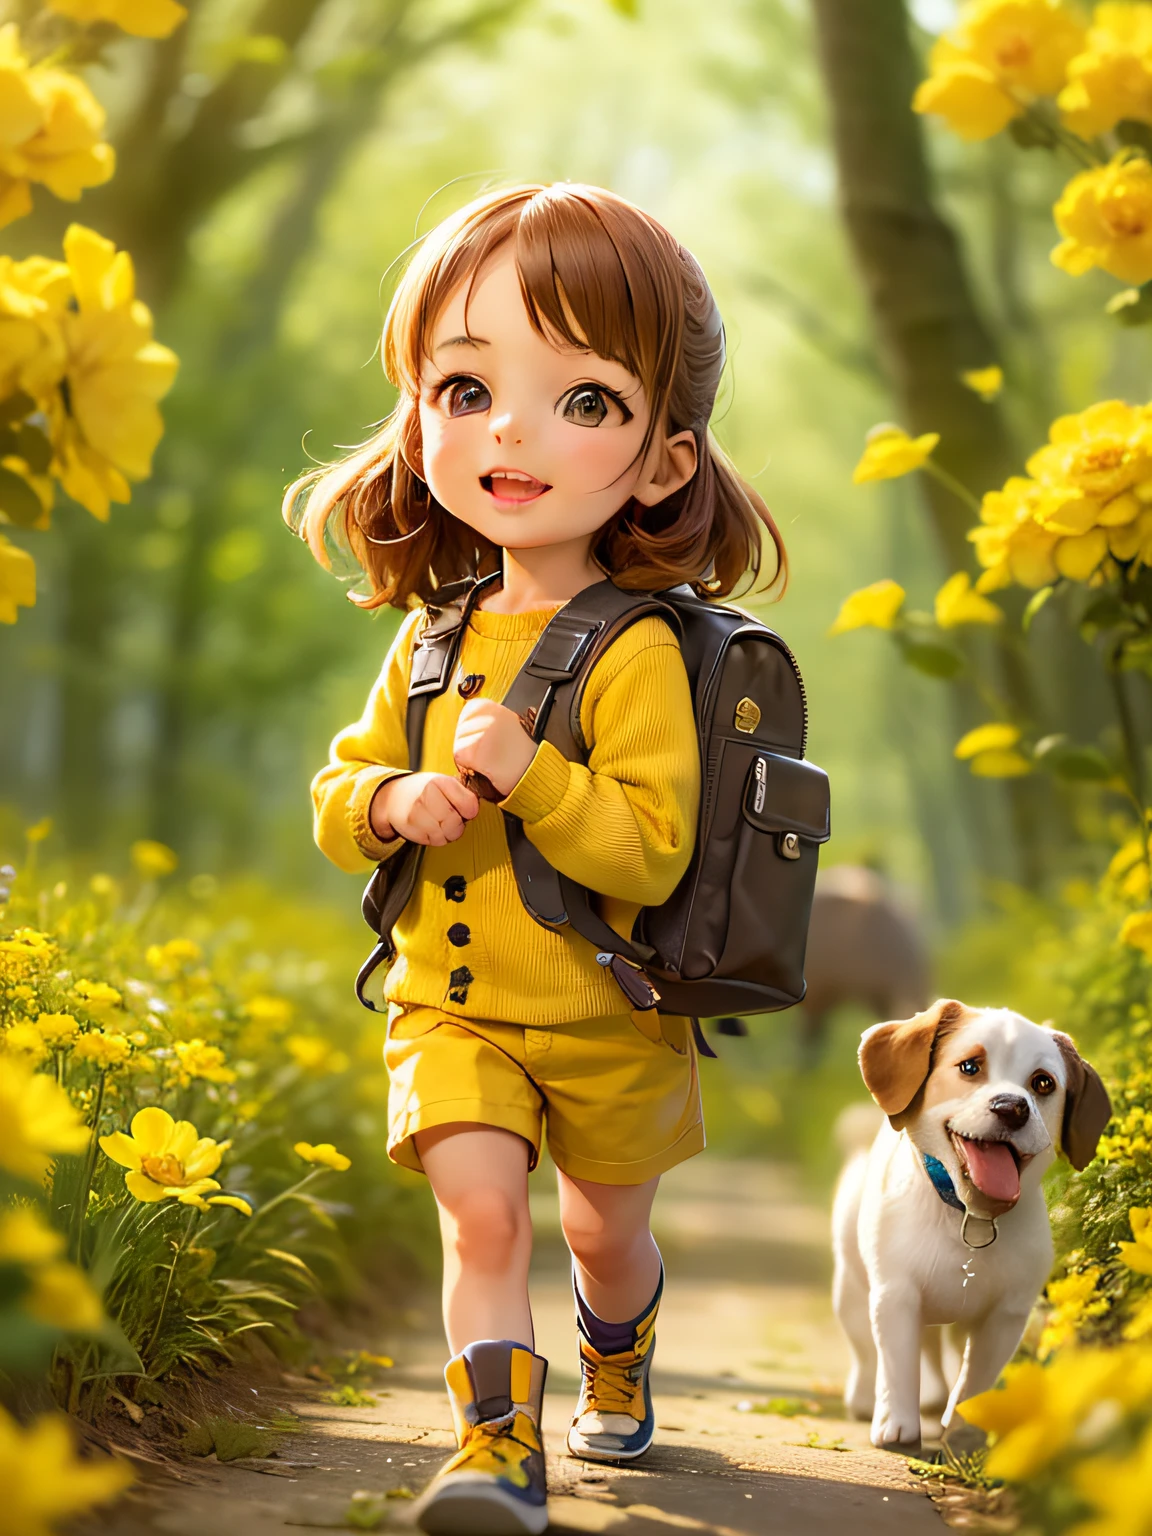 一个非常可爱的人背着背包，和她可爱的小狗一起享受美丽的春天散步，周围是美丽的黄色花朵和大自然. 该插画为4K高清插画，五官细节丰富，卡通风格.